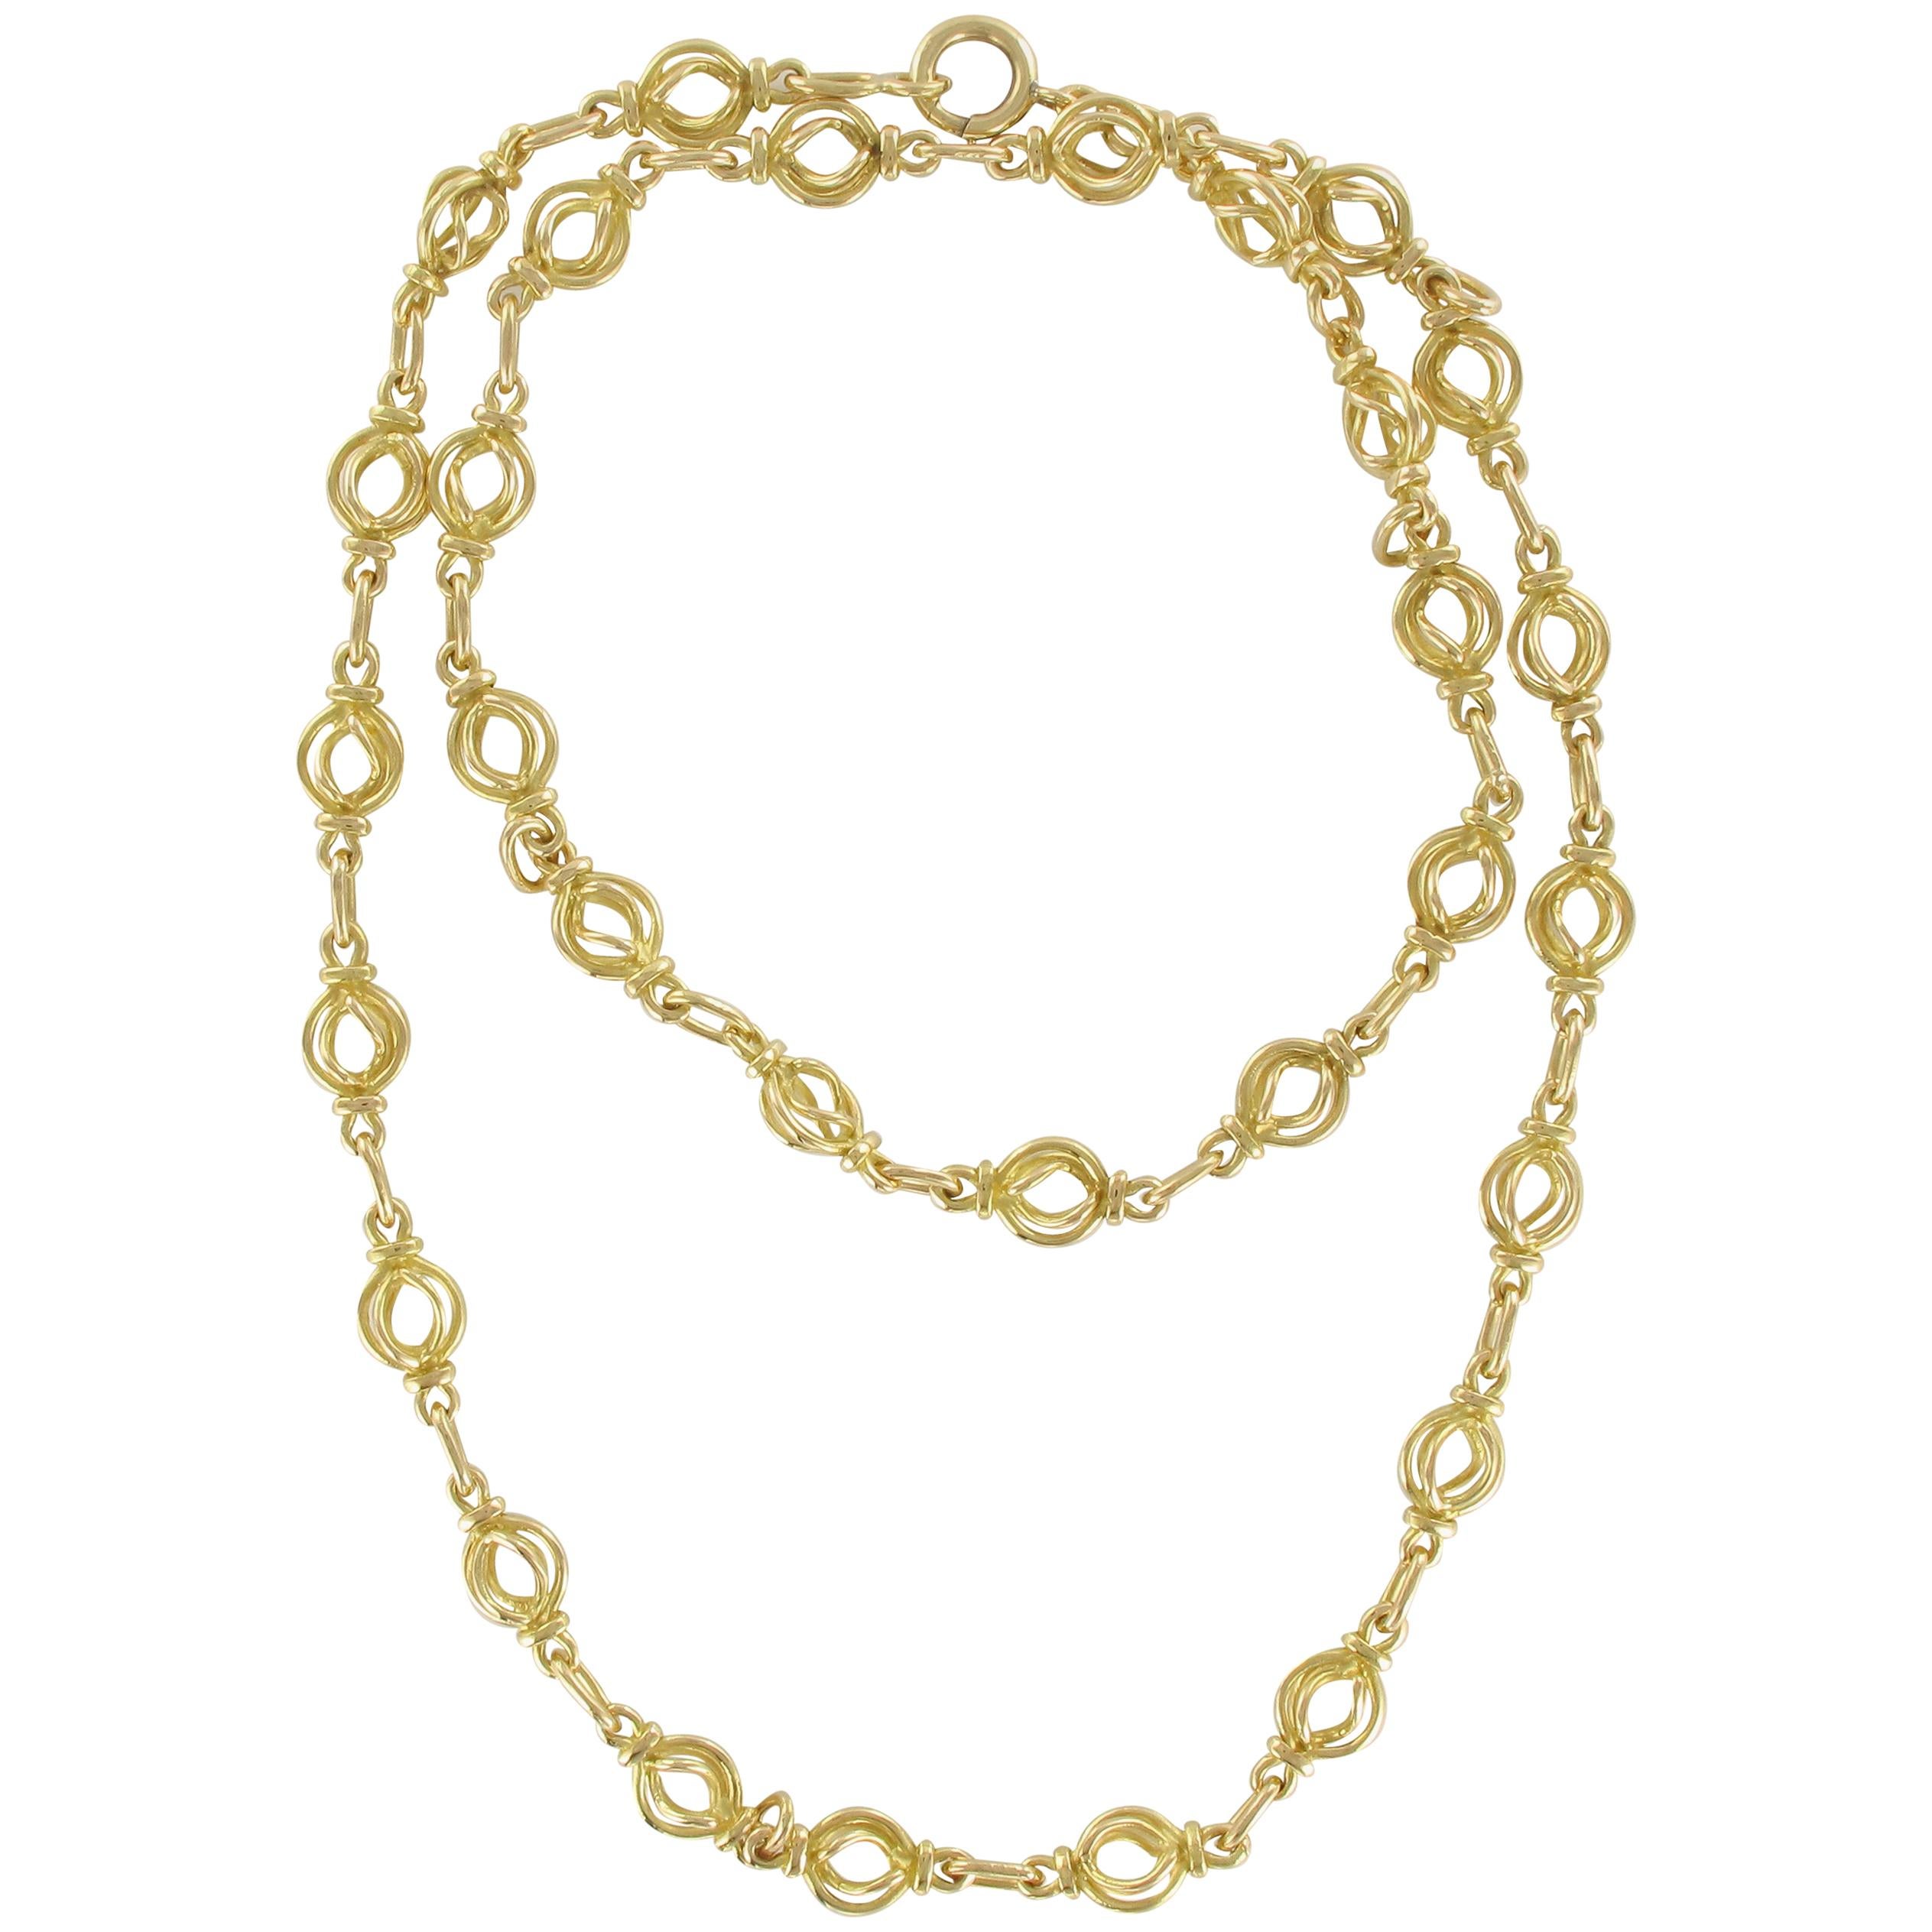 1900s Antique 18 Karat Gold Round Link Chain Necklace